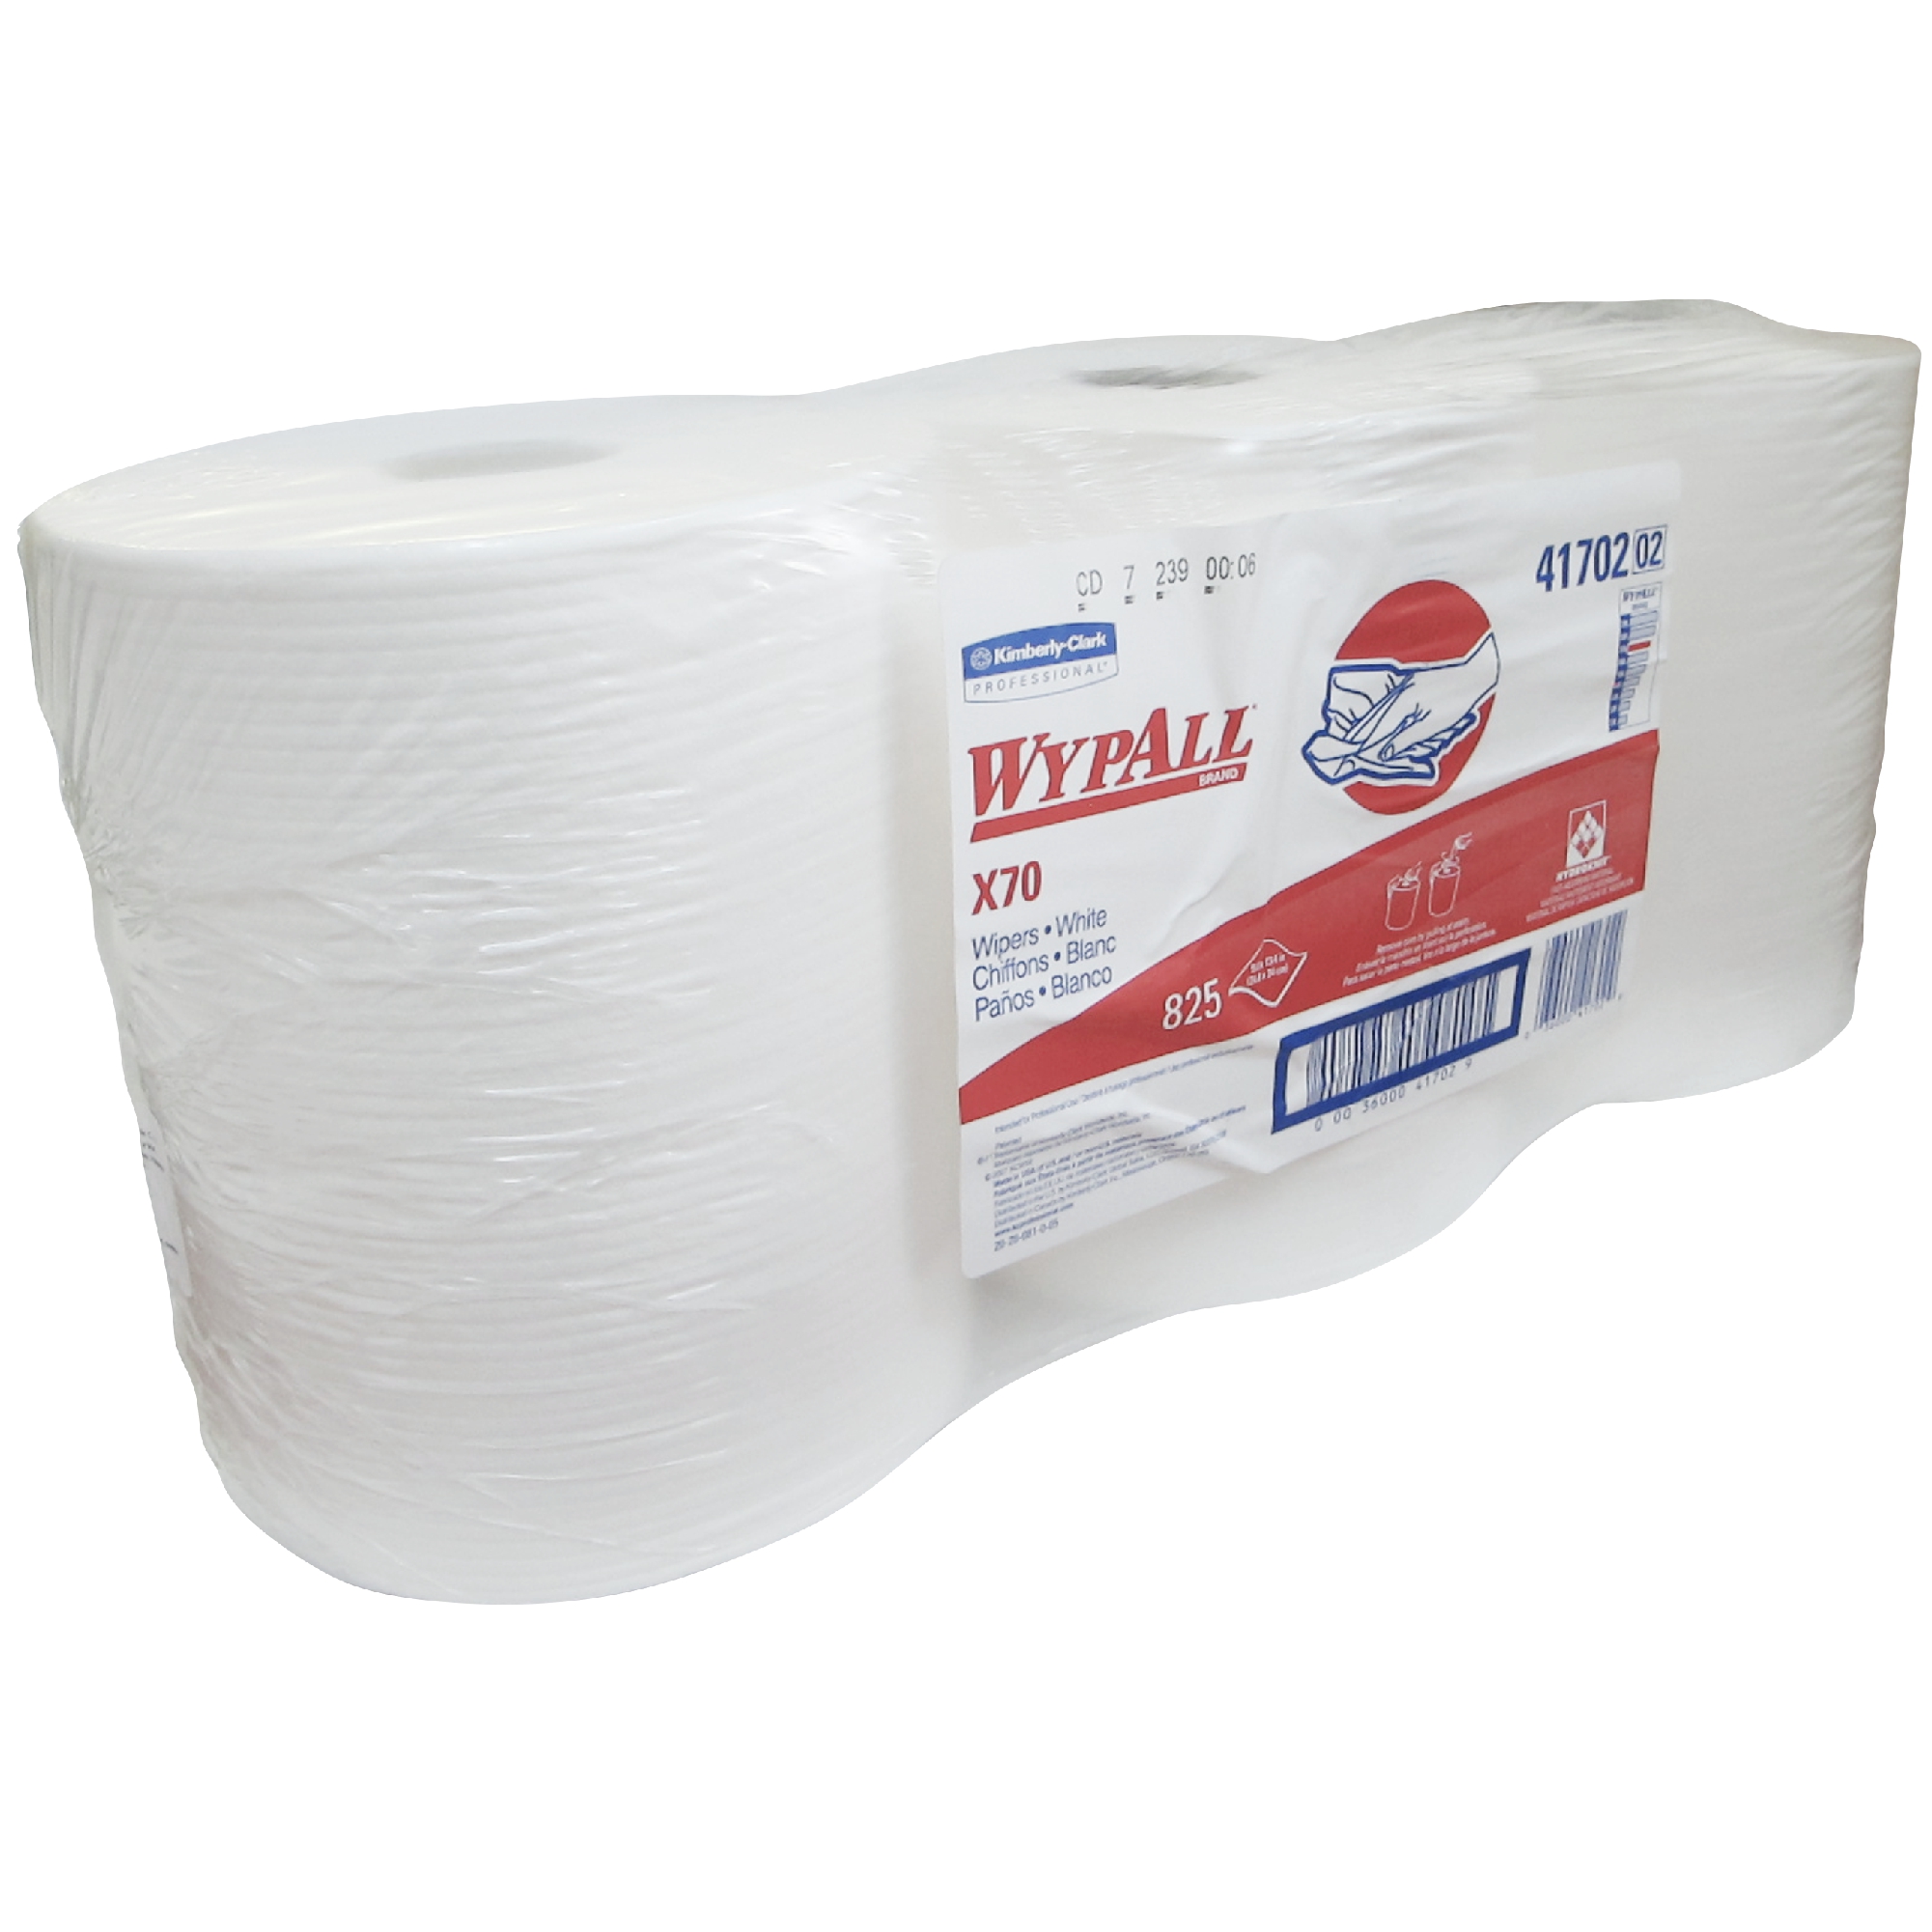 Kimberly Clark 1412-X70 WyPall 41702-2 toalla en rollo color blanca Workhorse, paquete con 3 rollos de 825 hojas cada uno